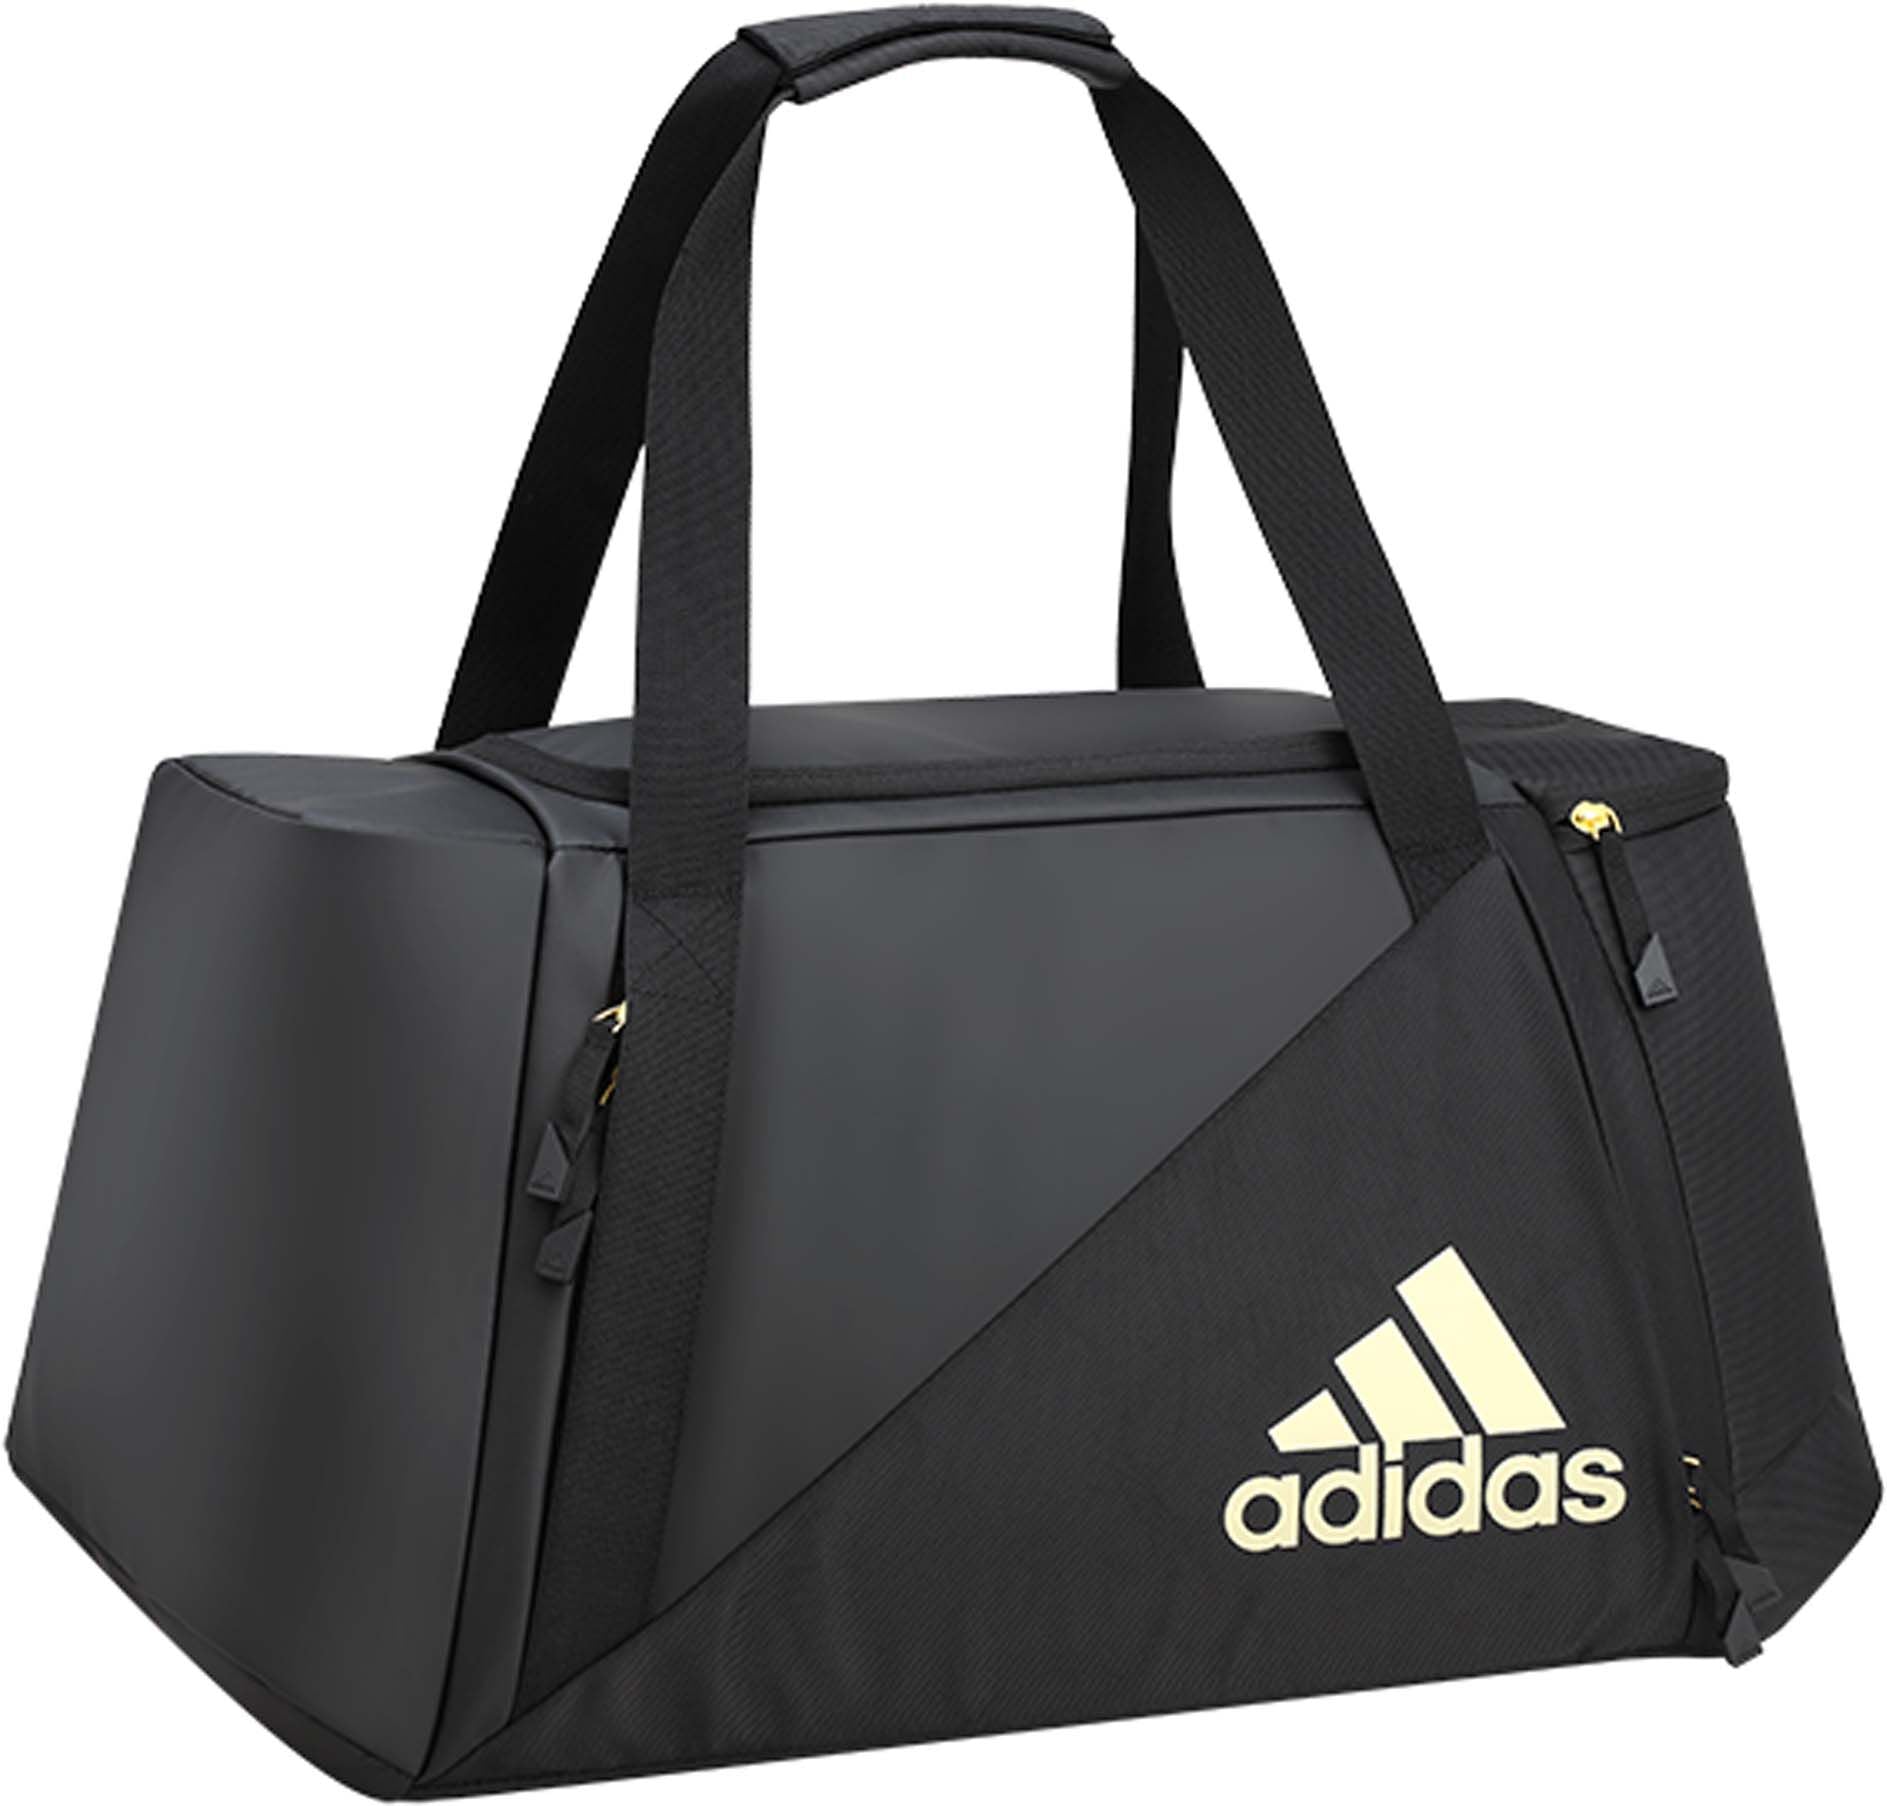 Adidas VS6 Duffel Bag